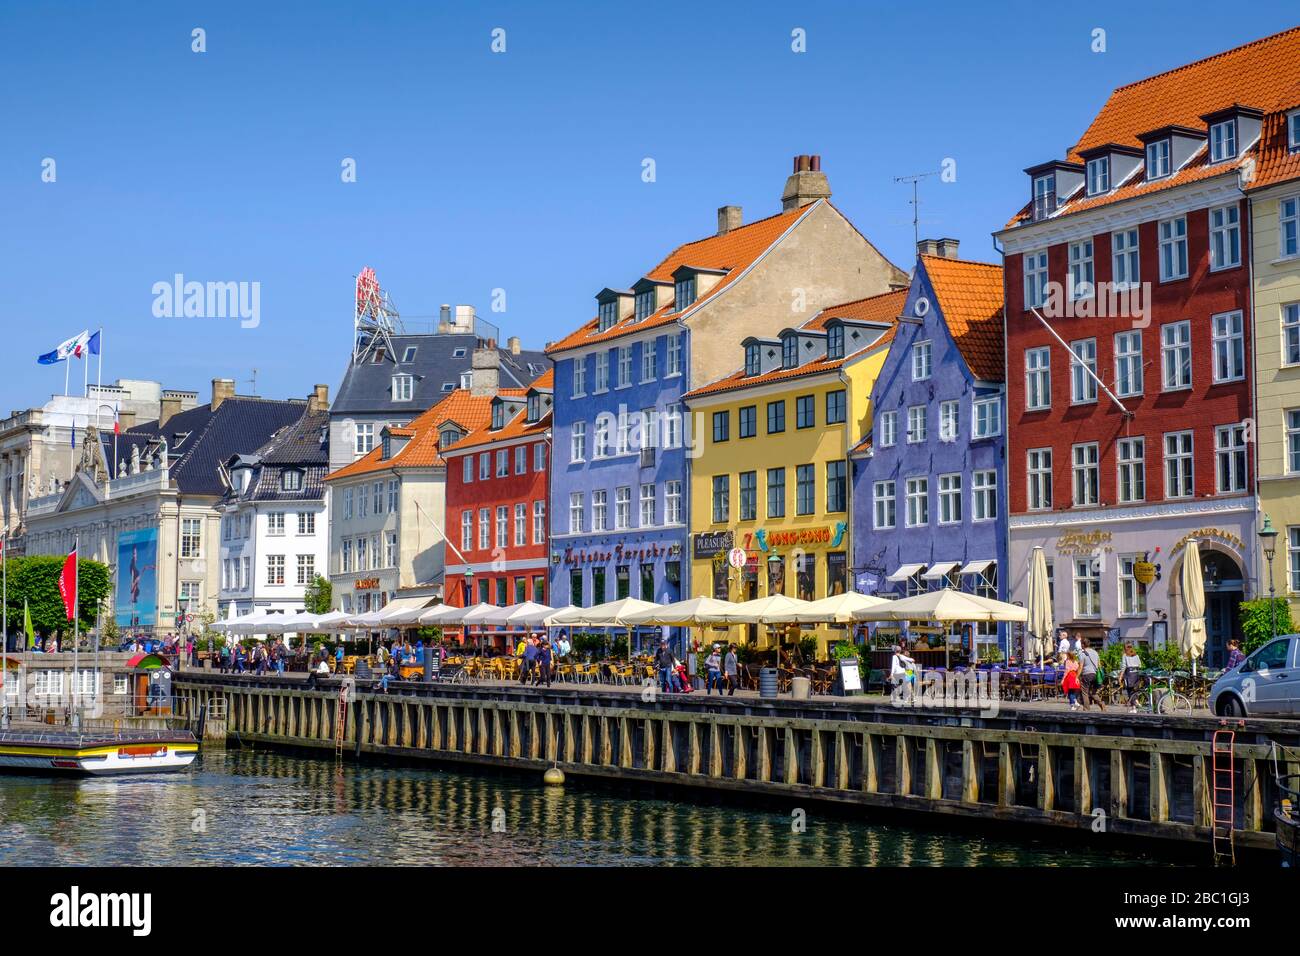 Bunte Häuser und Segelboote am Nyhavn-Kanal, Kopenhagen, Dänemark Foto Stock